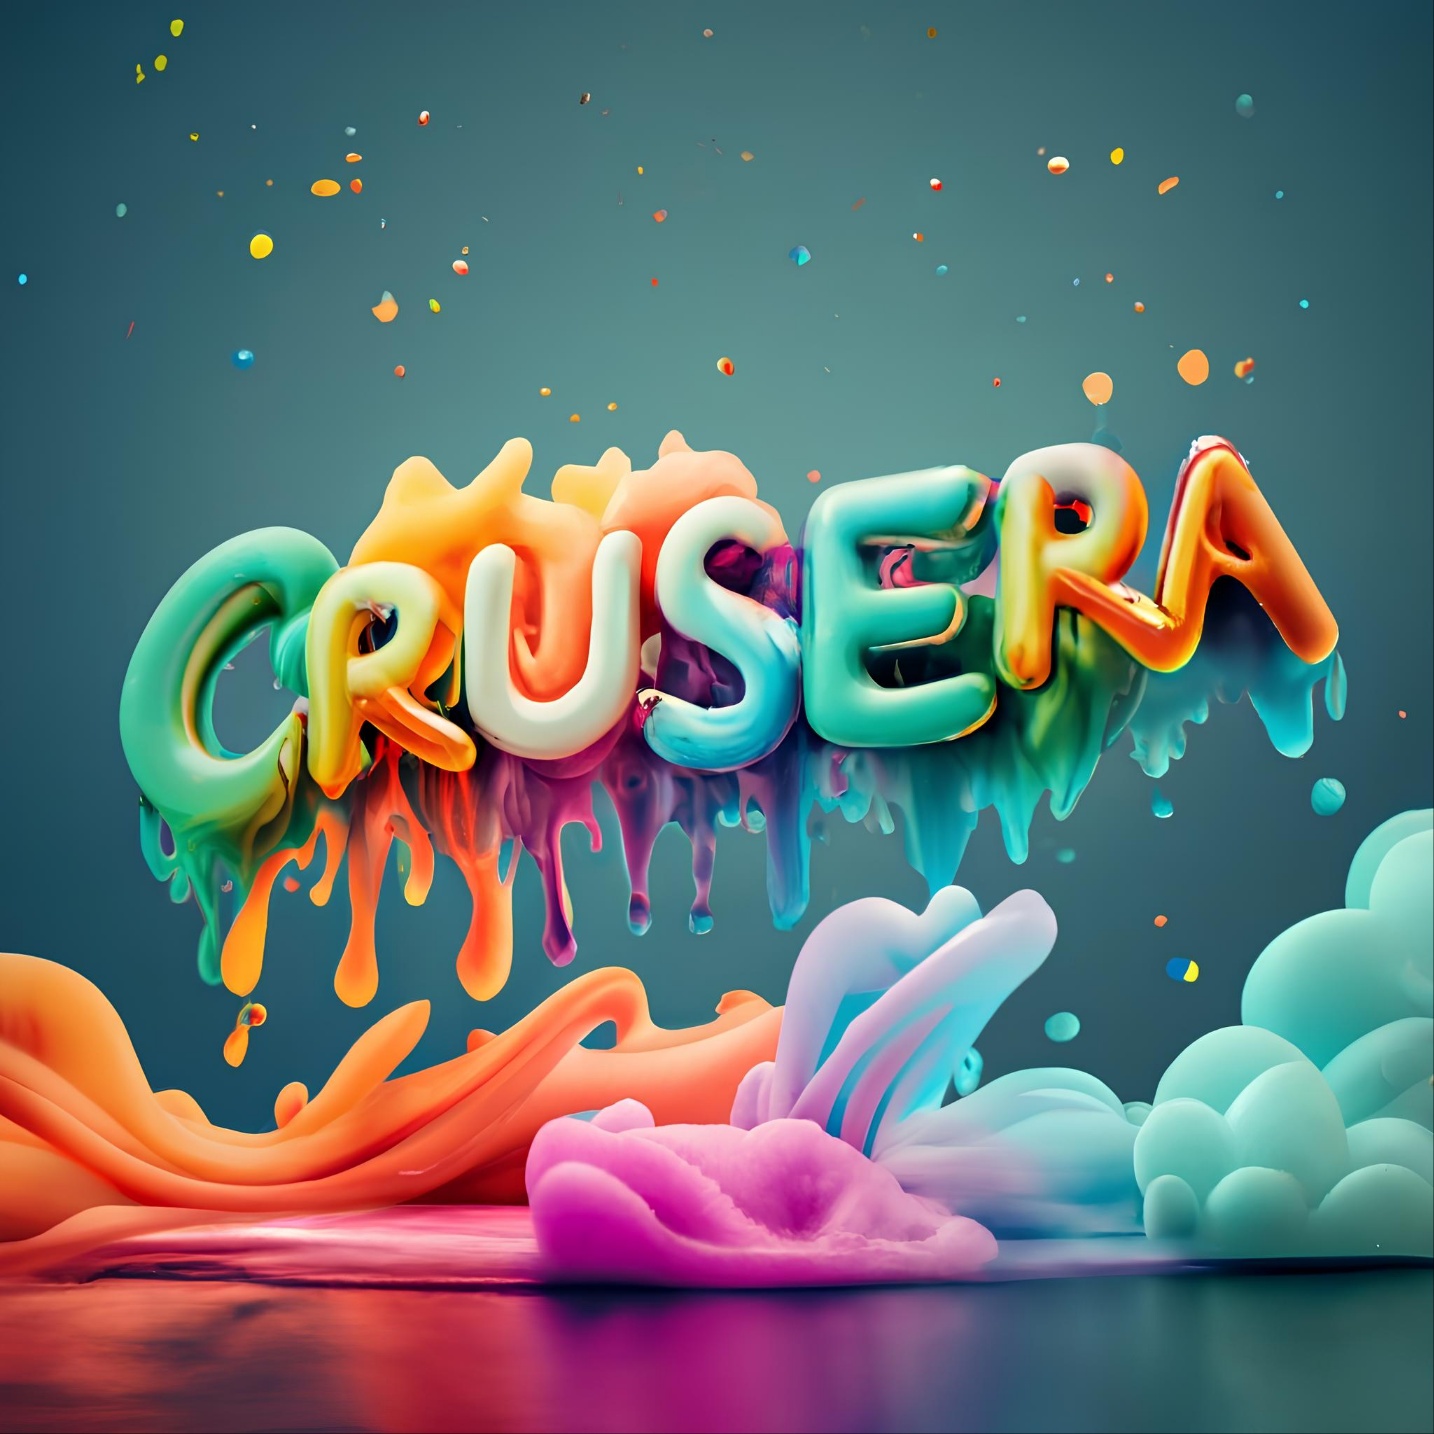 Crusera- 배너